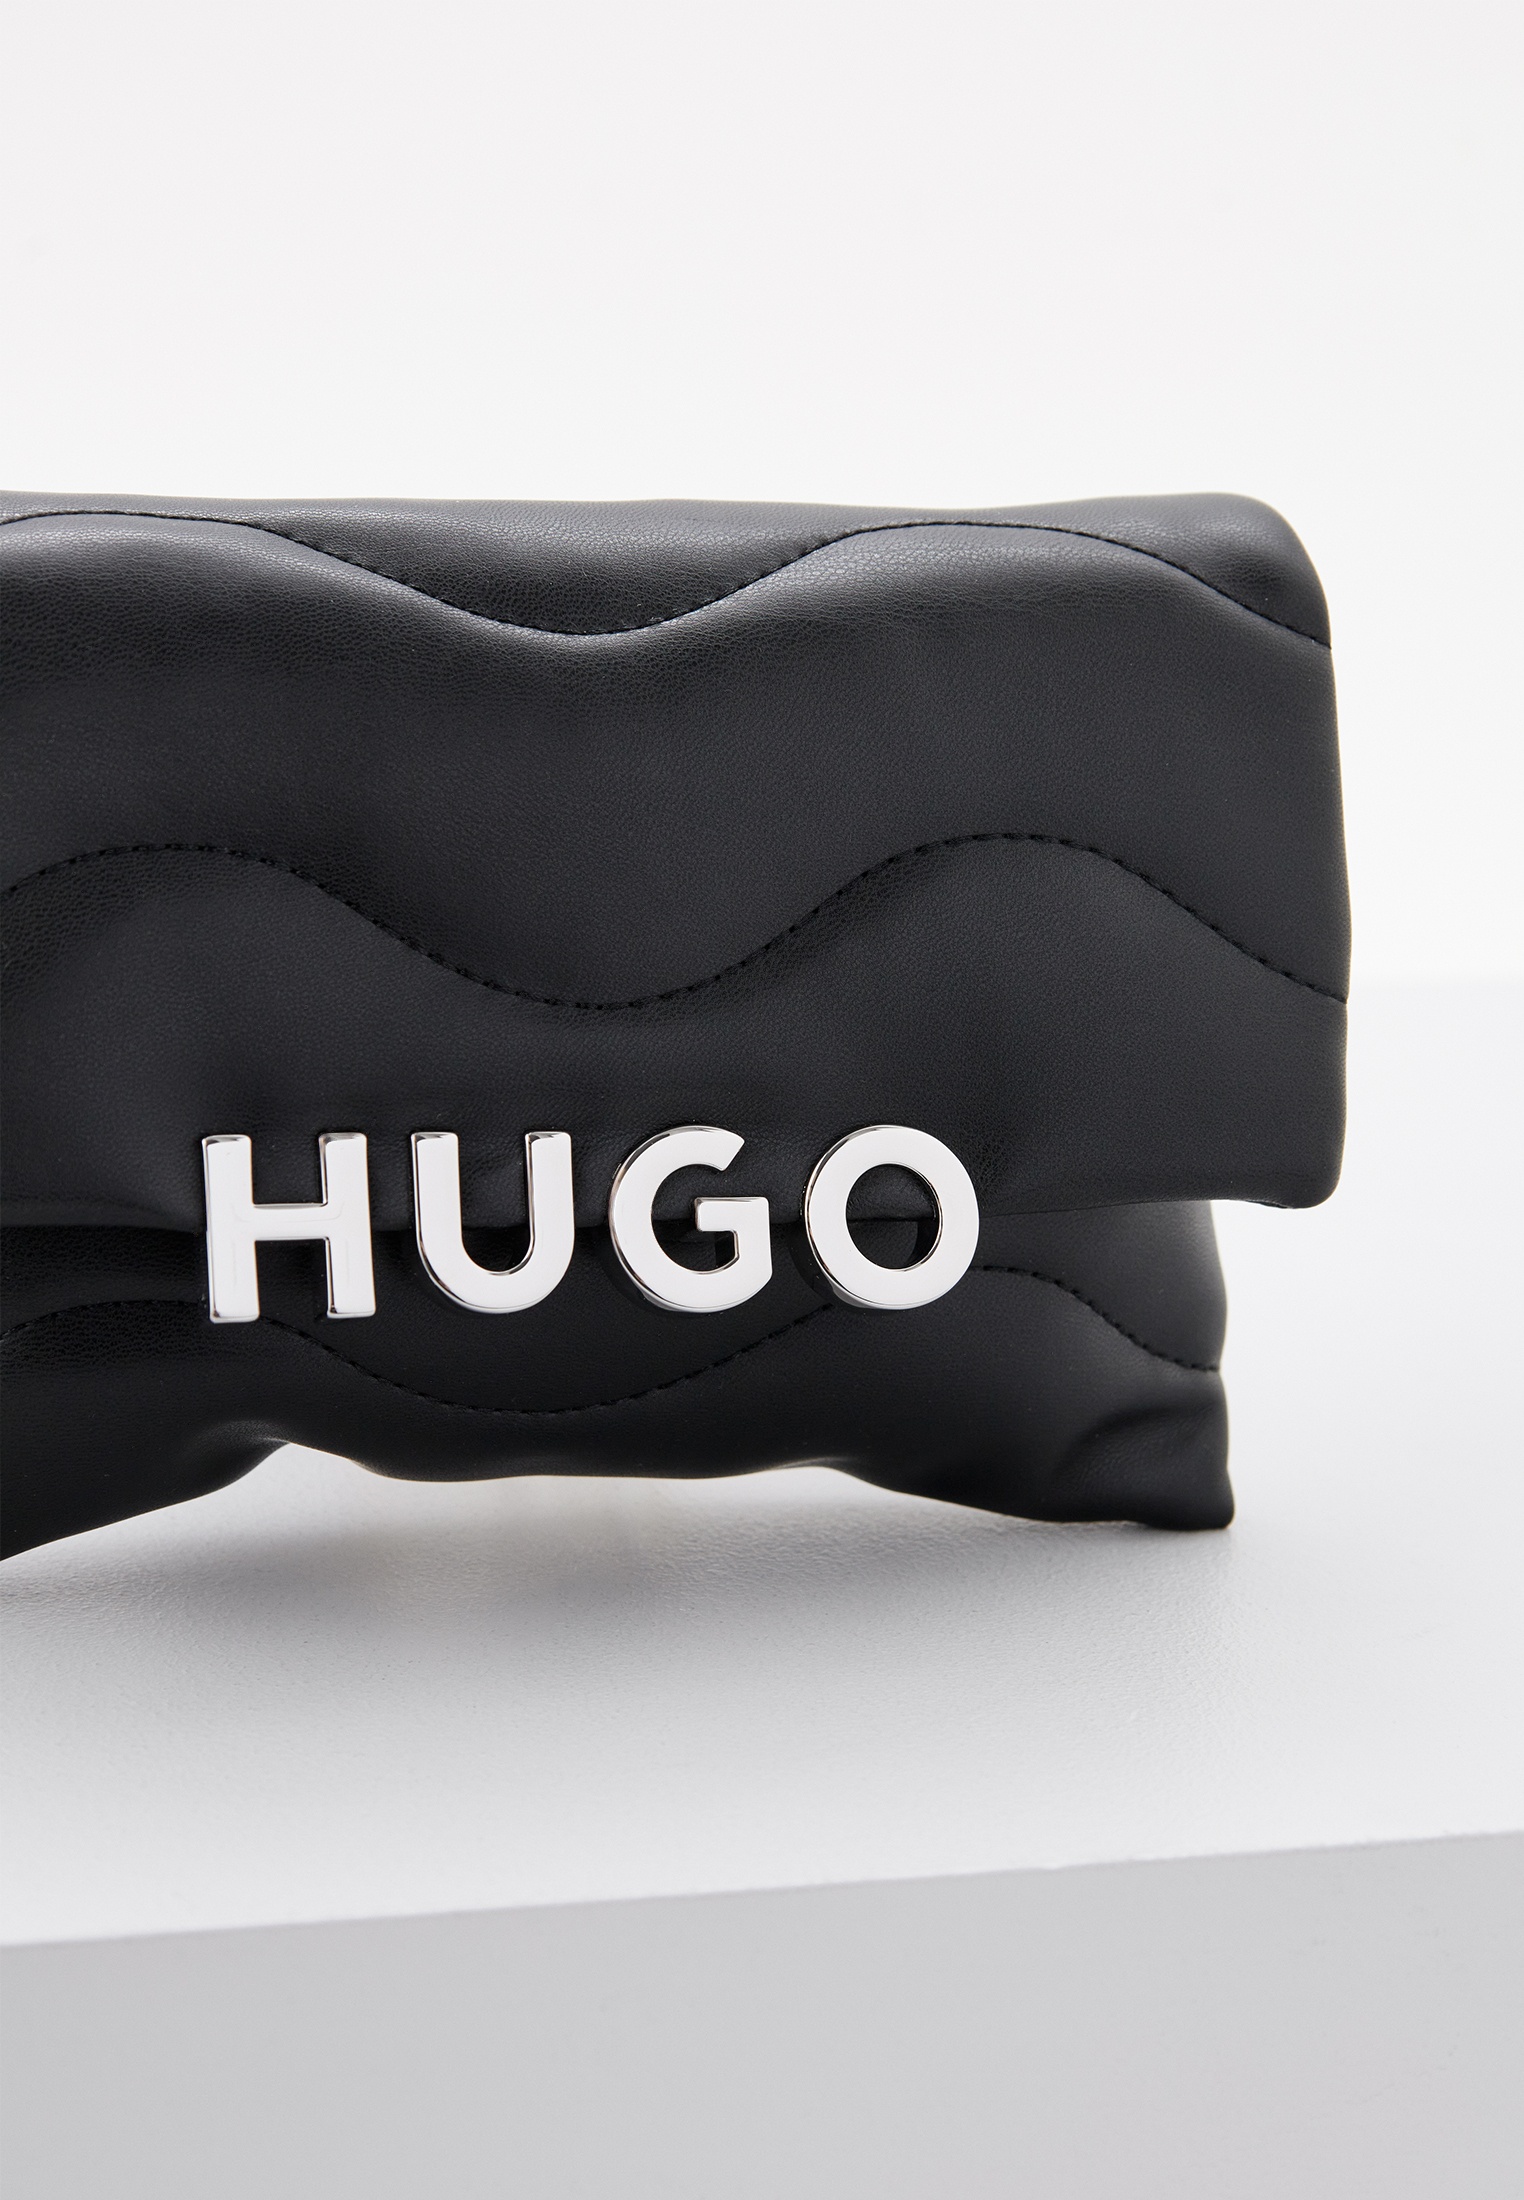 Hugo женские сумки. Сумка Hugo женская. Сумка Hugo. Hugo сумка женская белая.